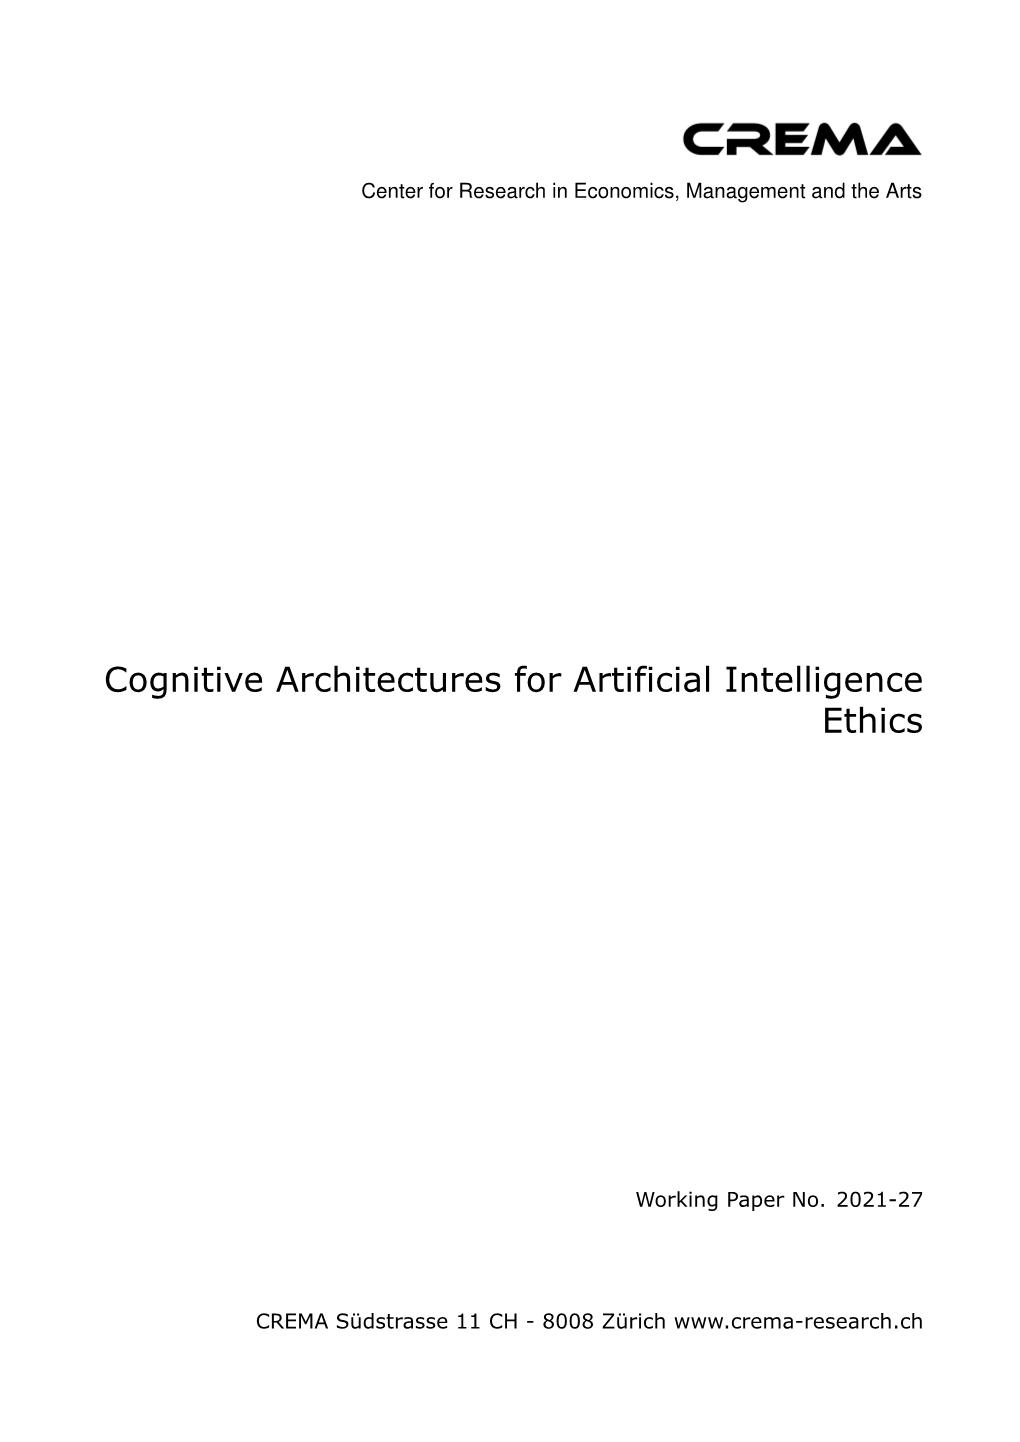 Cognitive Architectures for Artificial Intelligence Ethics René L